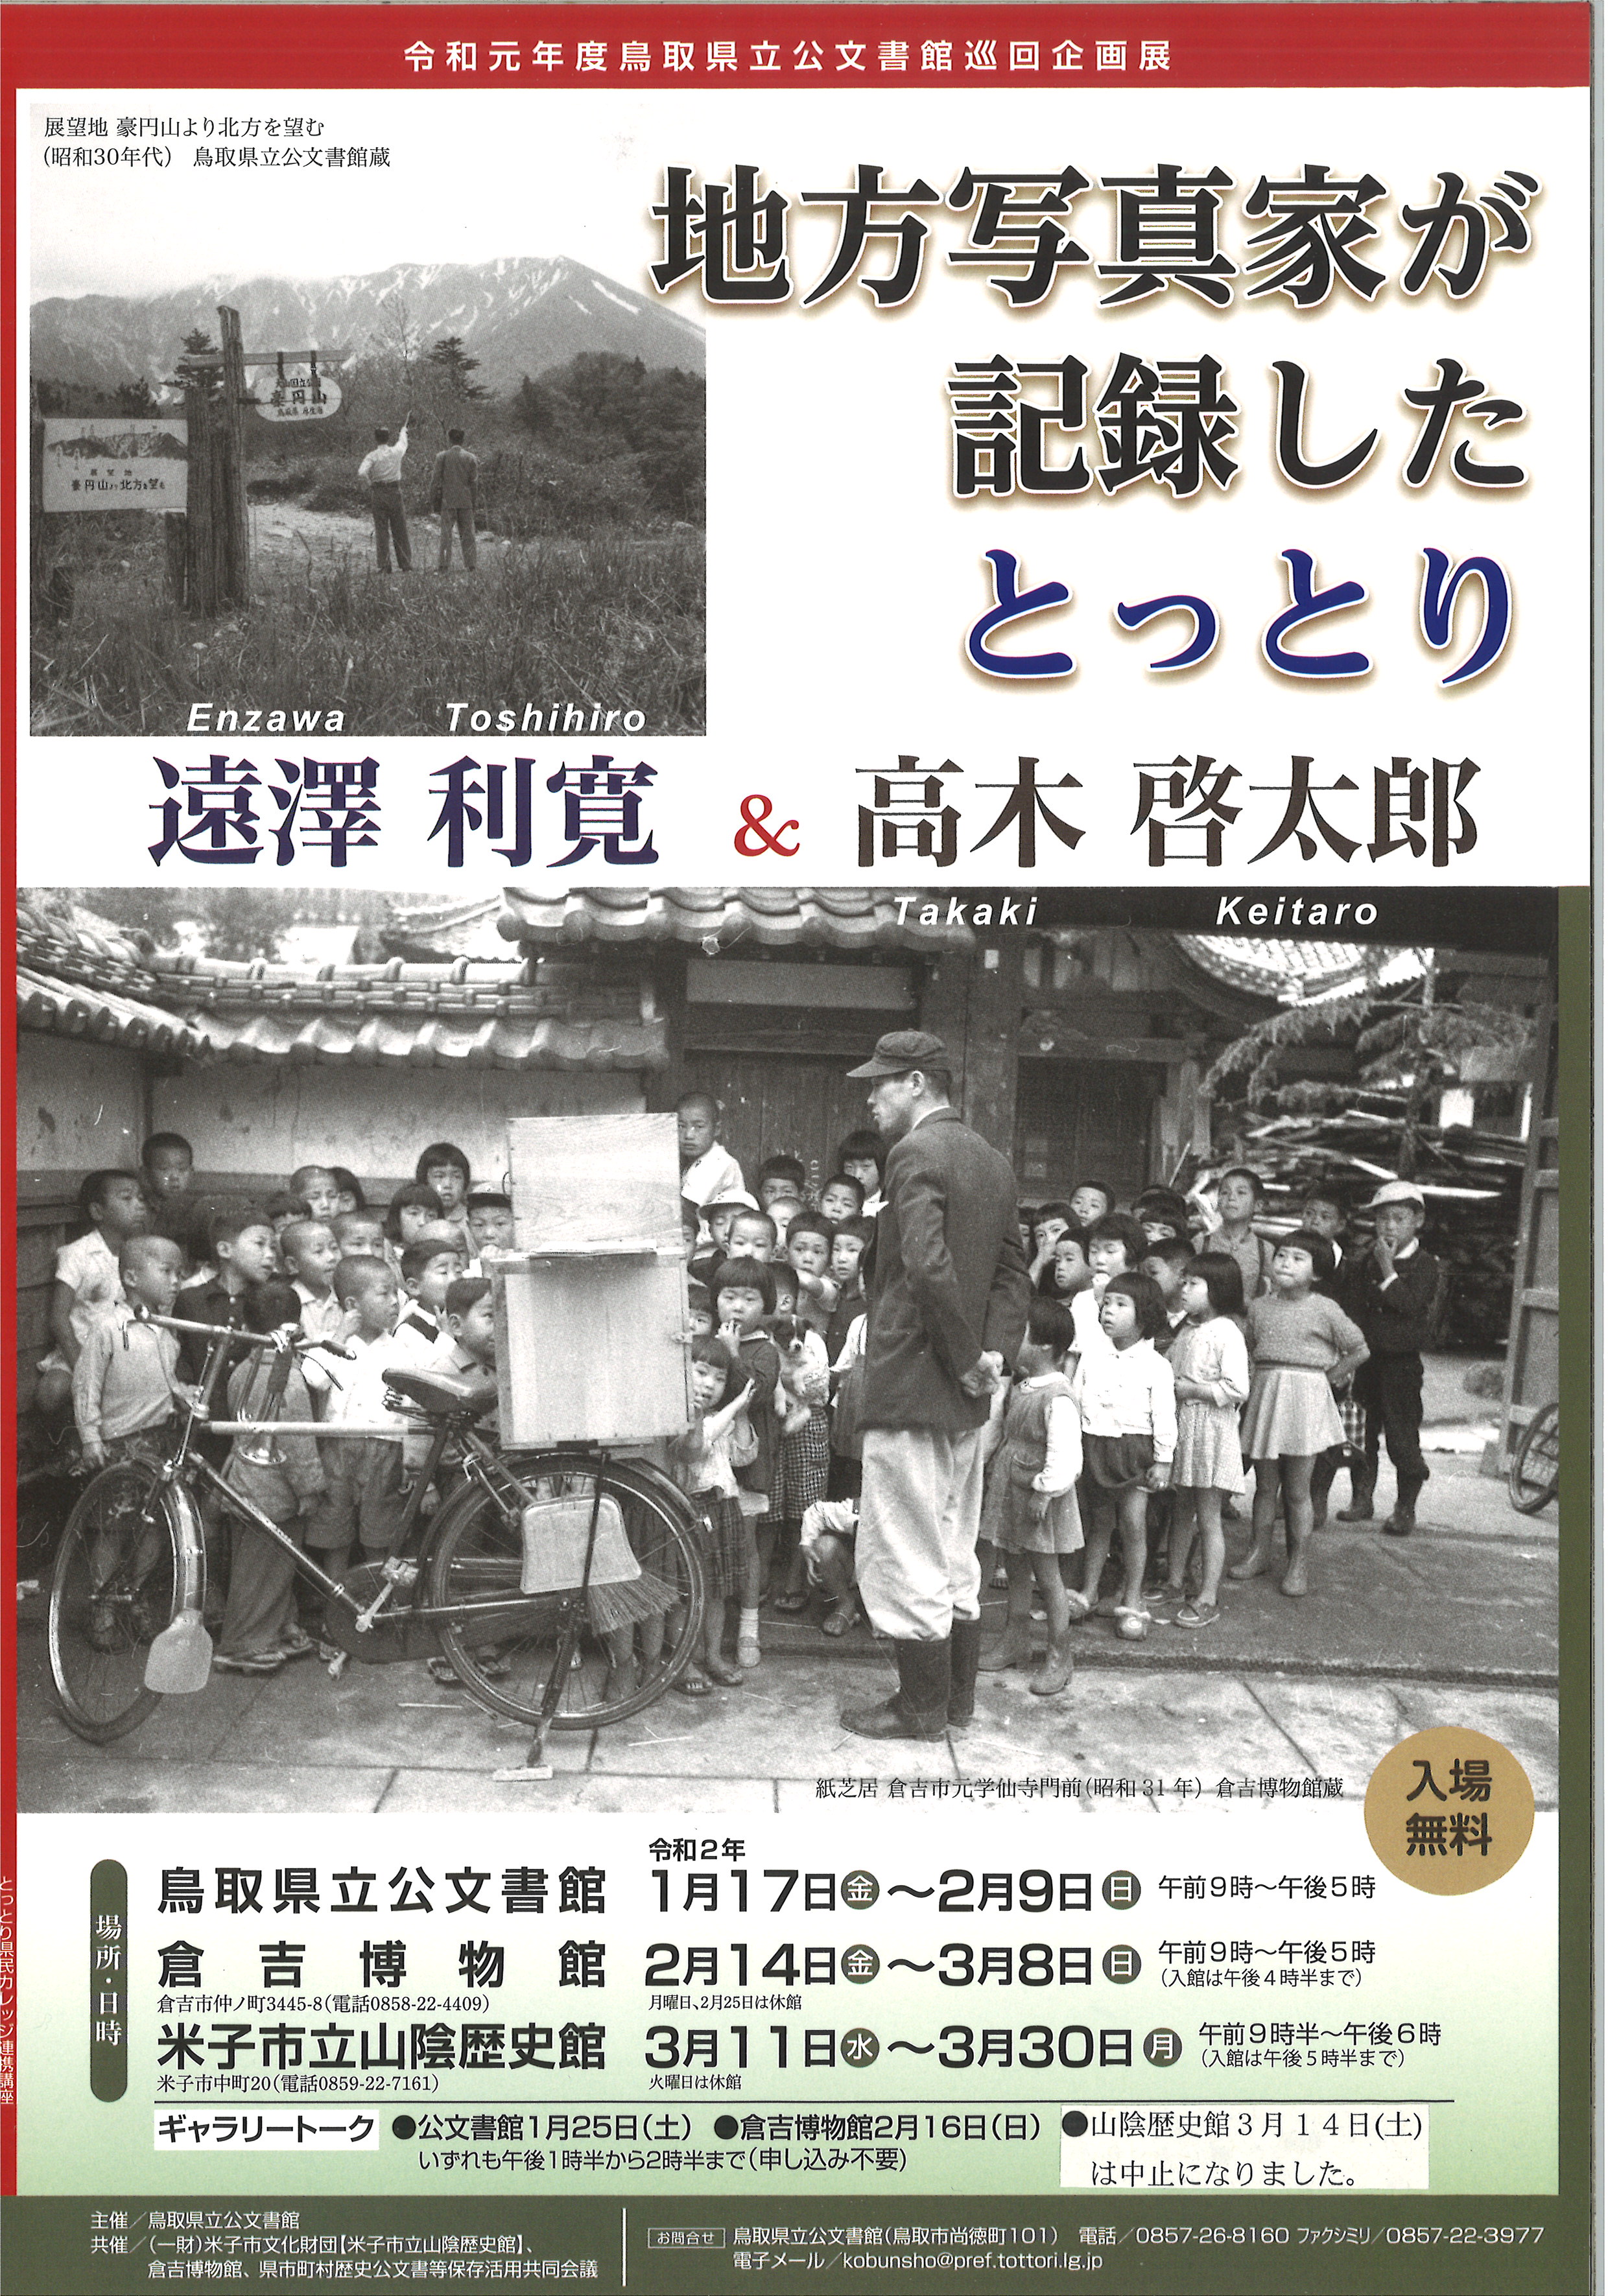 令和元年度鳥取県立公文書館巡回企画展のご案内です